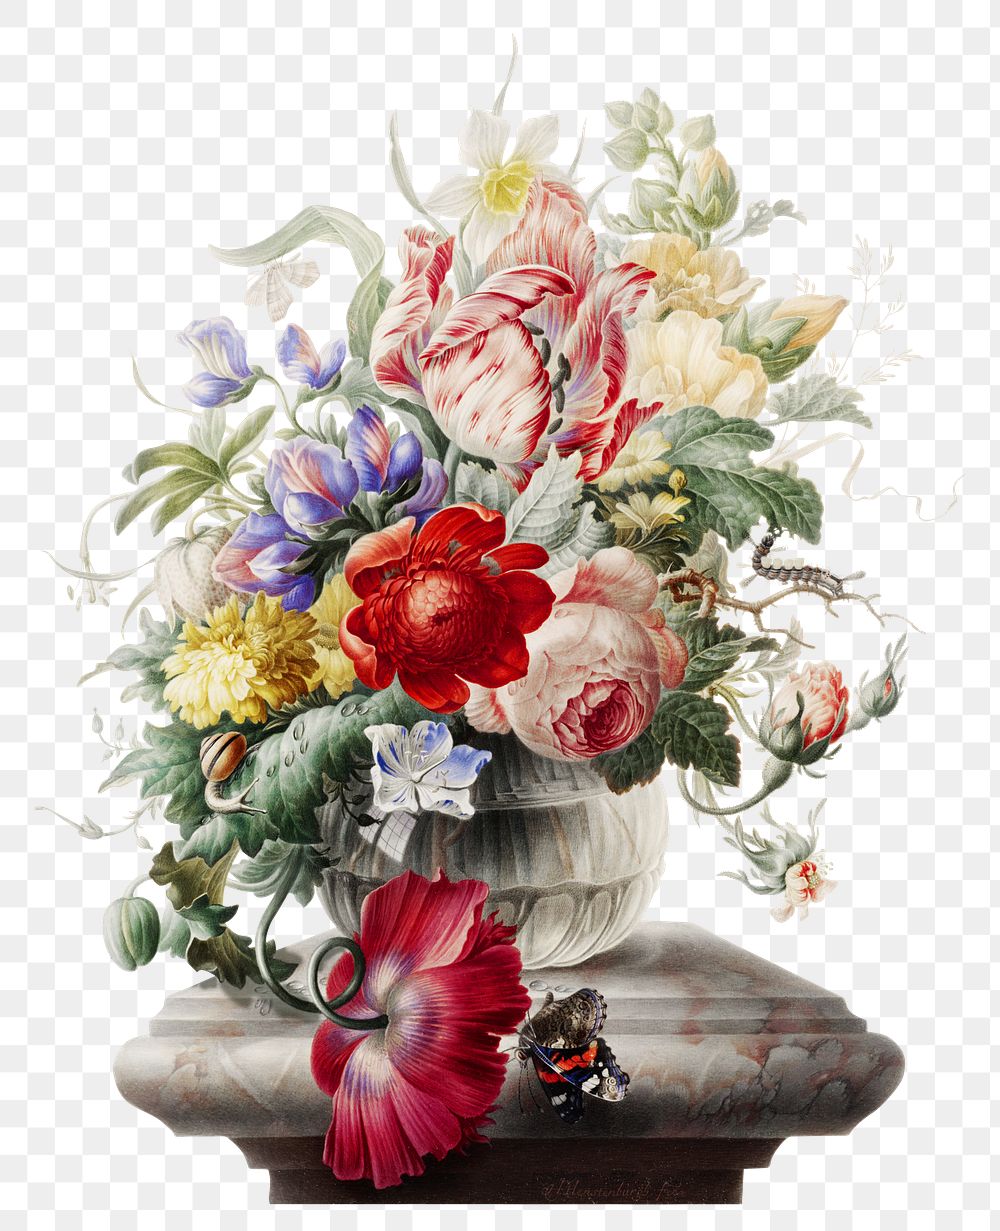 Colourful flower vase png, transparent background